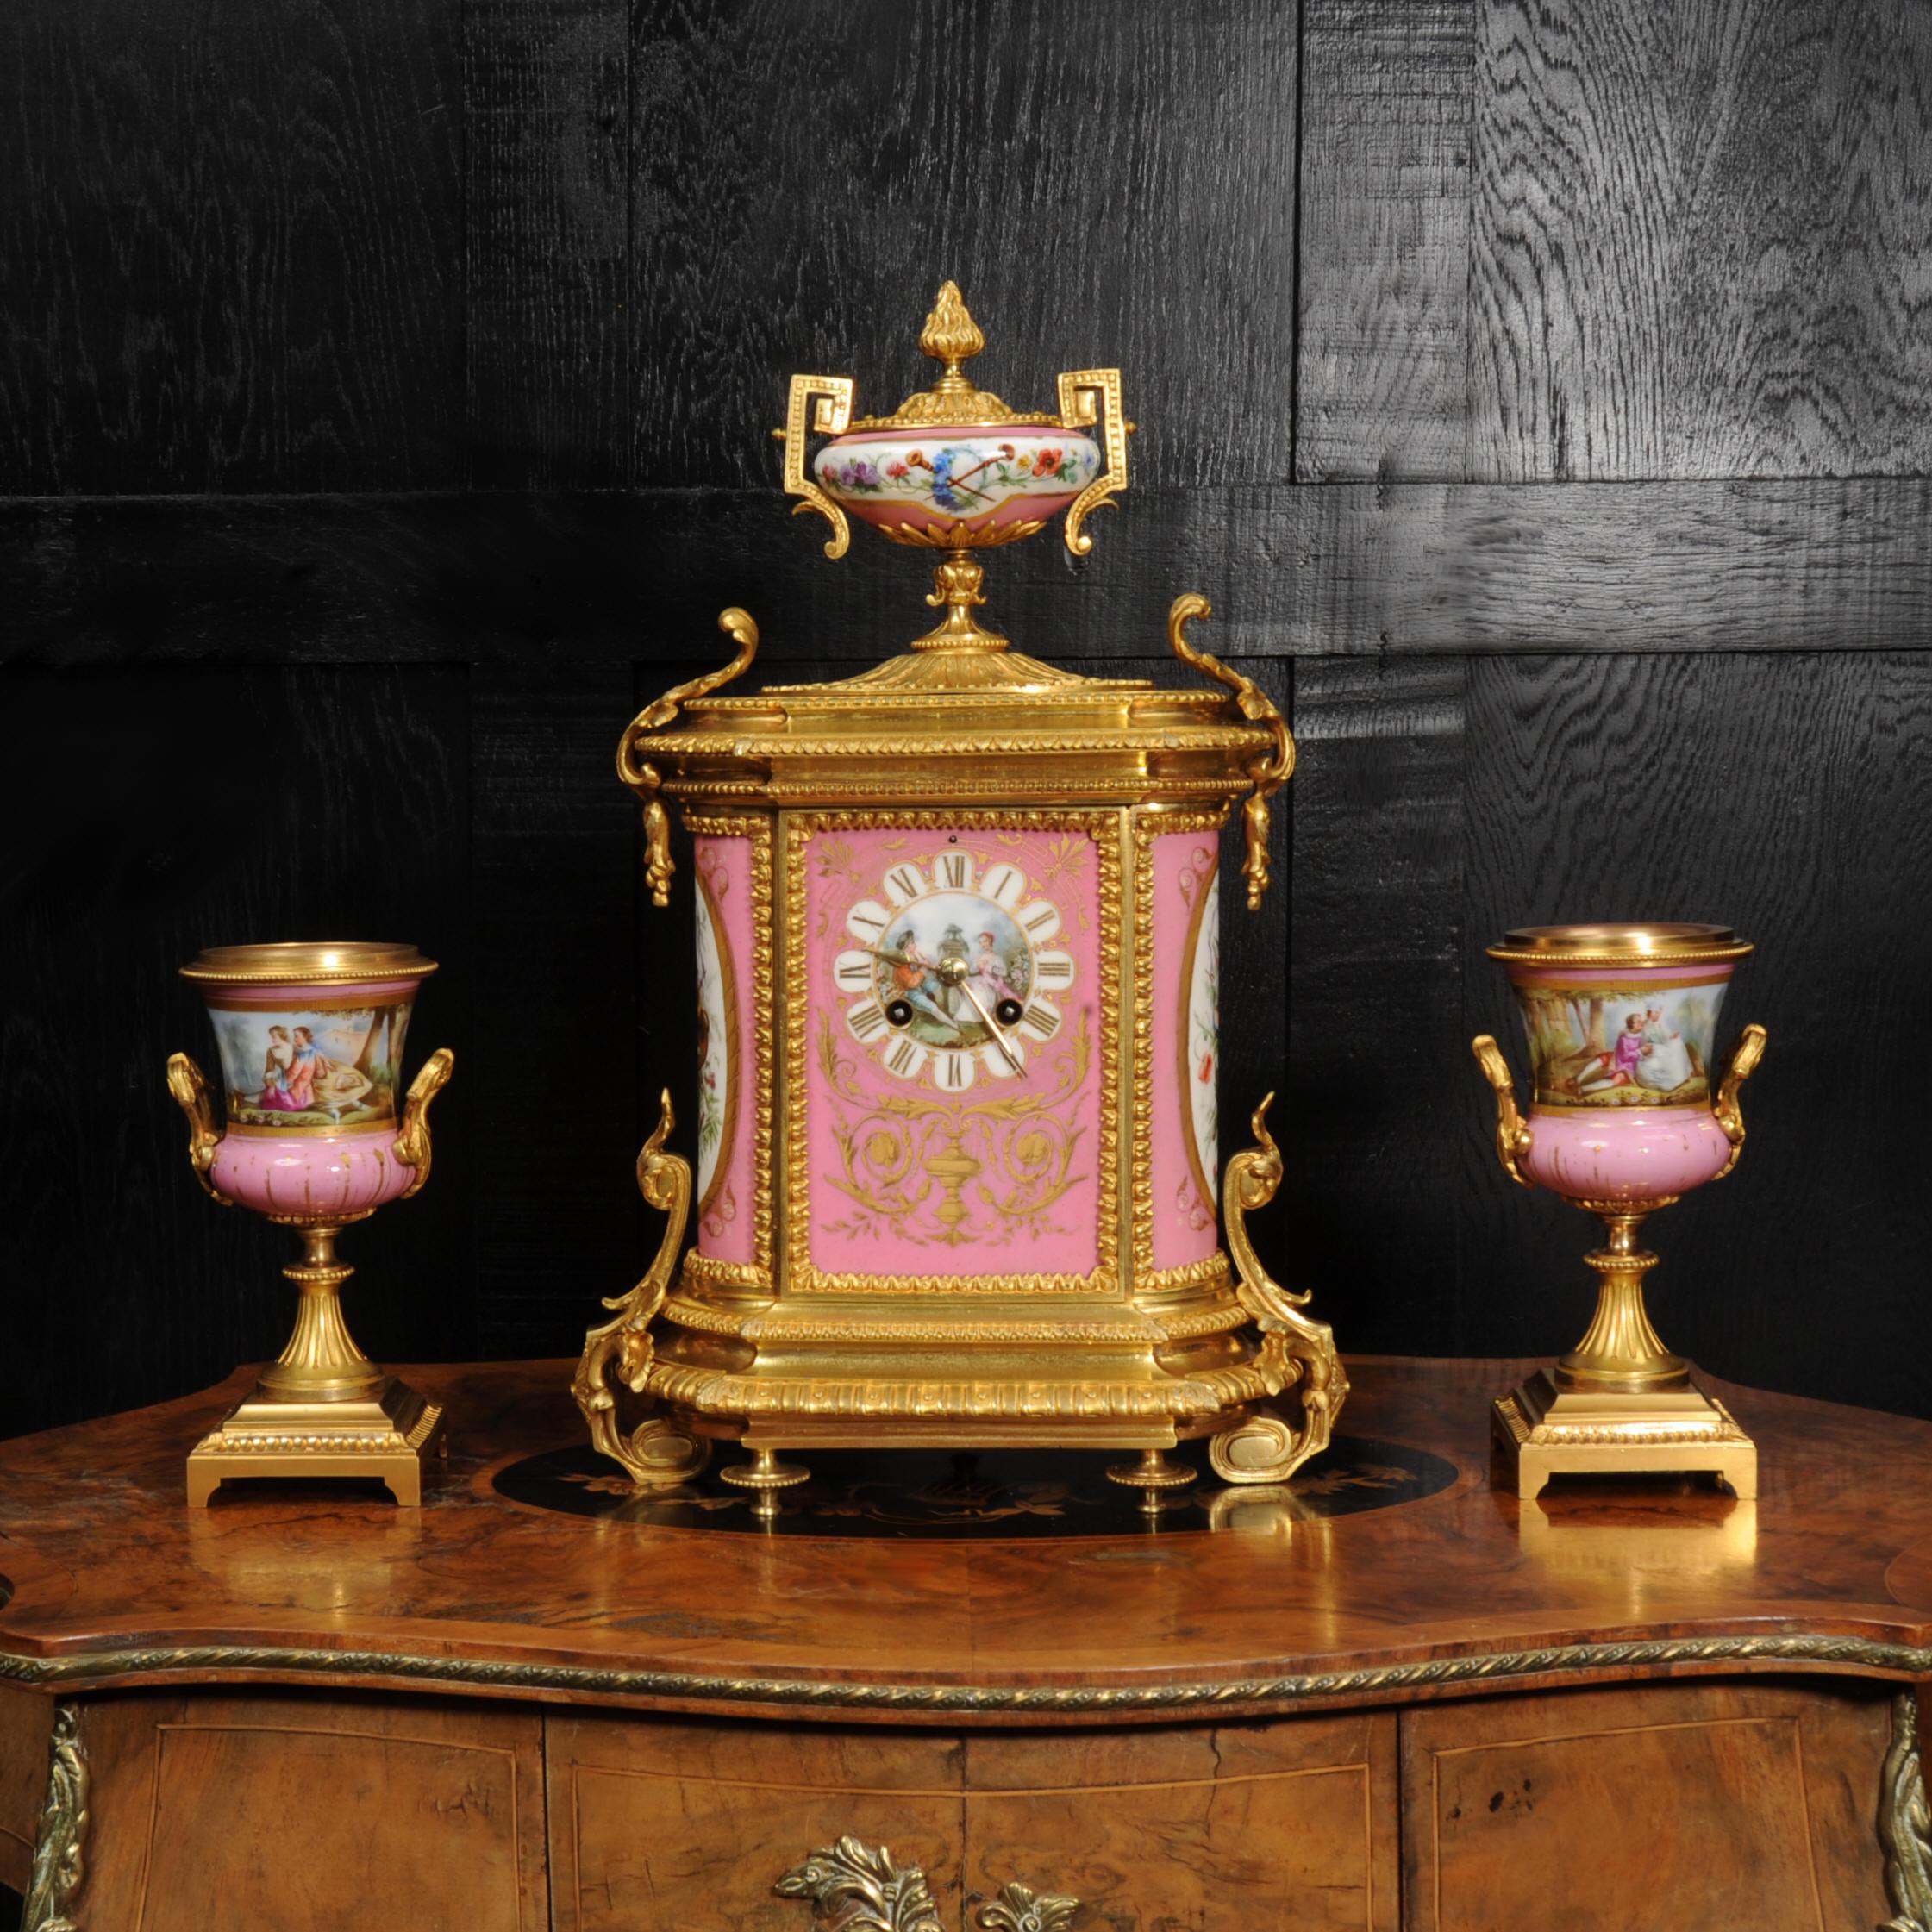 Eine atemberaubende antike französische Ormolu-Uhr, um 1870, montiert mit exquisitem Sèvres-Stil Porzellan mit Rose Pompadour rosa Boden. Die Paneele in der Mitte des Zifferblatts und der Urnen zeigen fein gemalte Szenen eines jungen Paares in einer